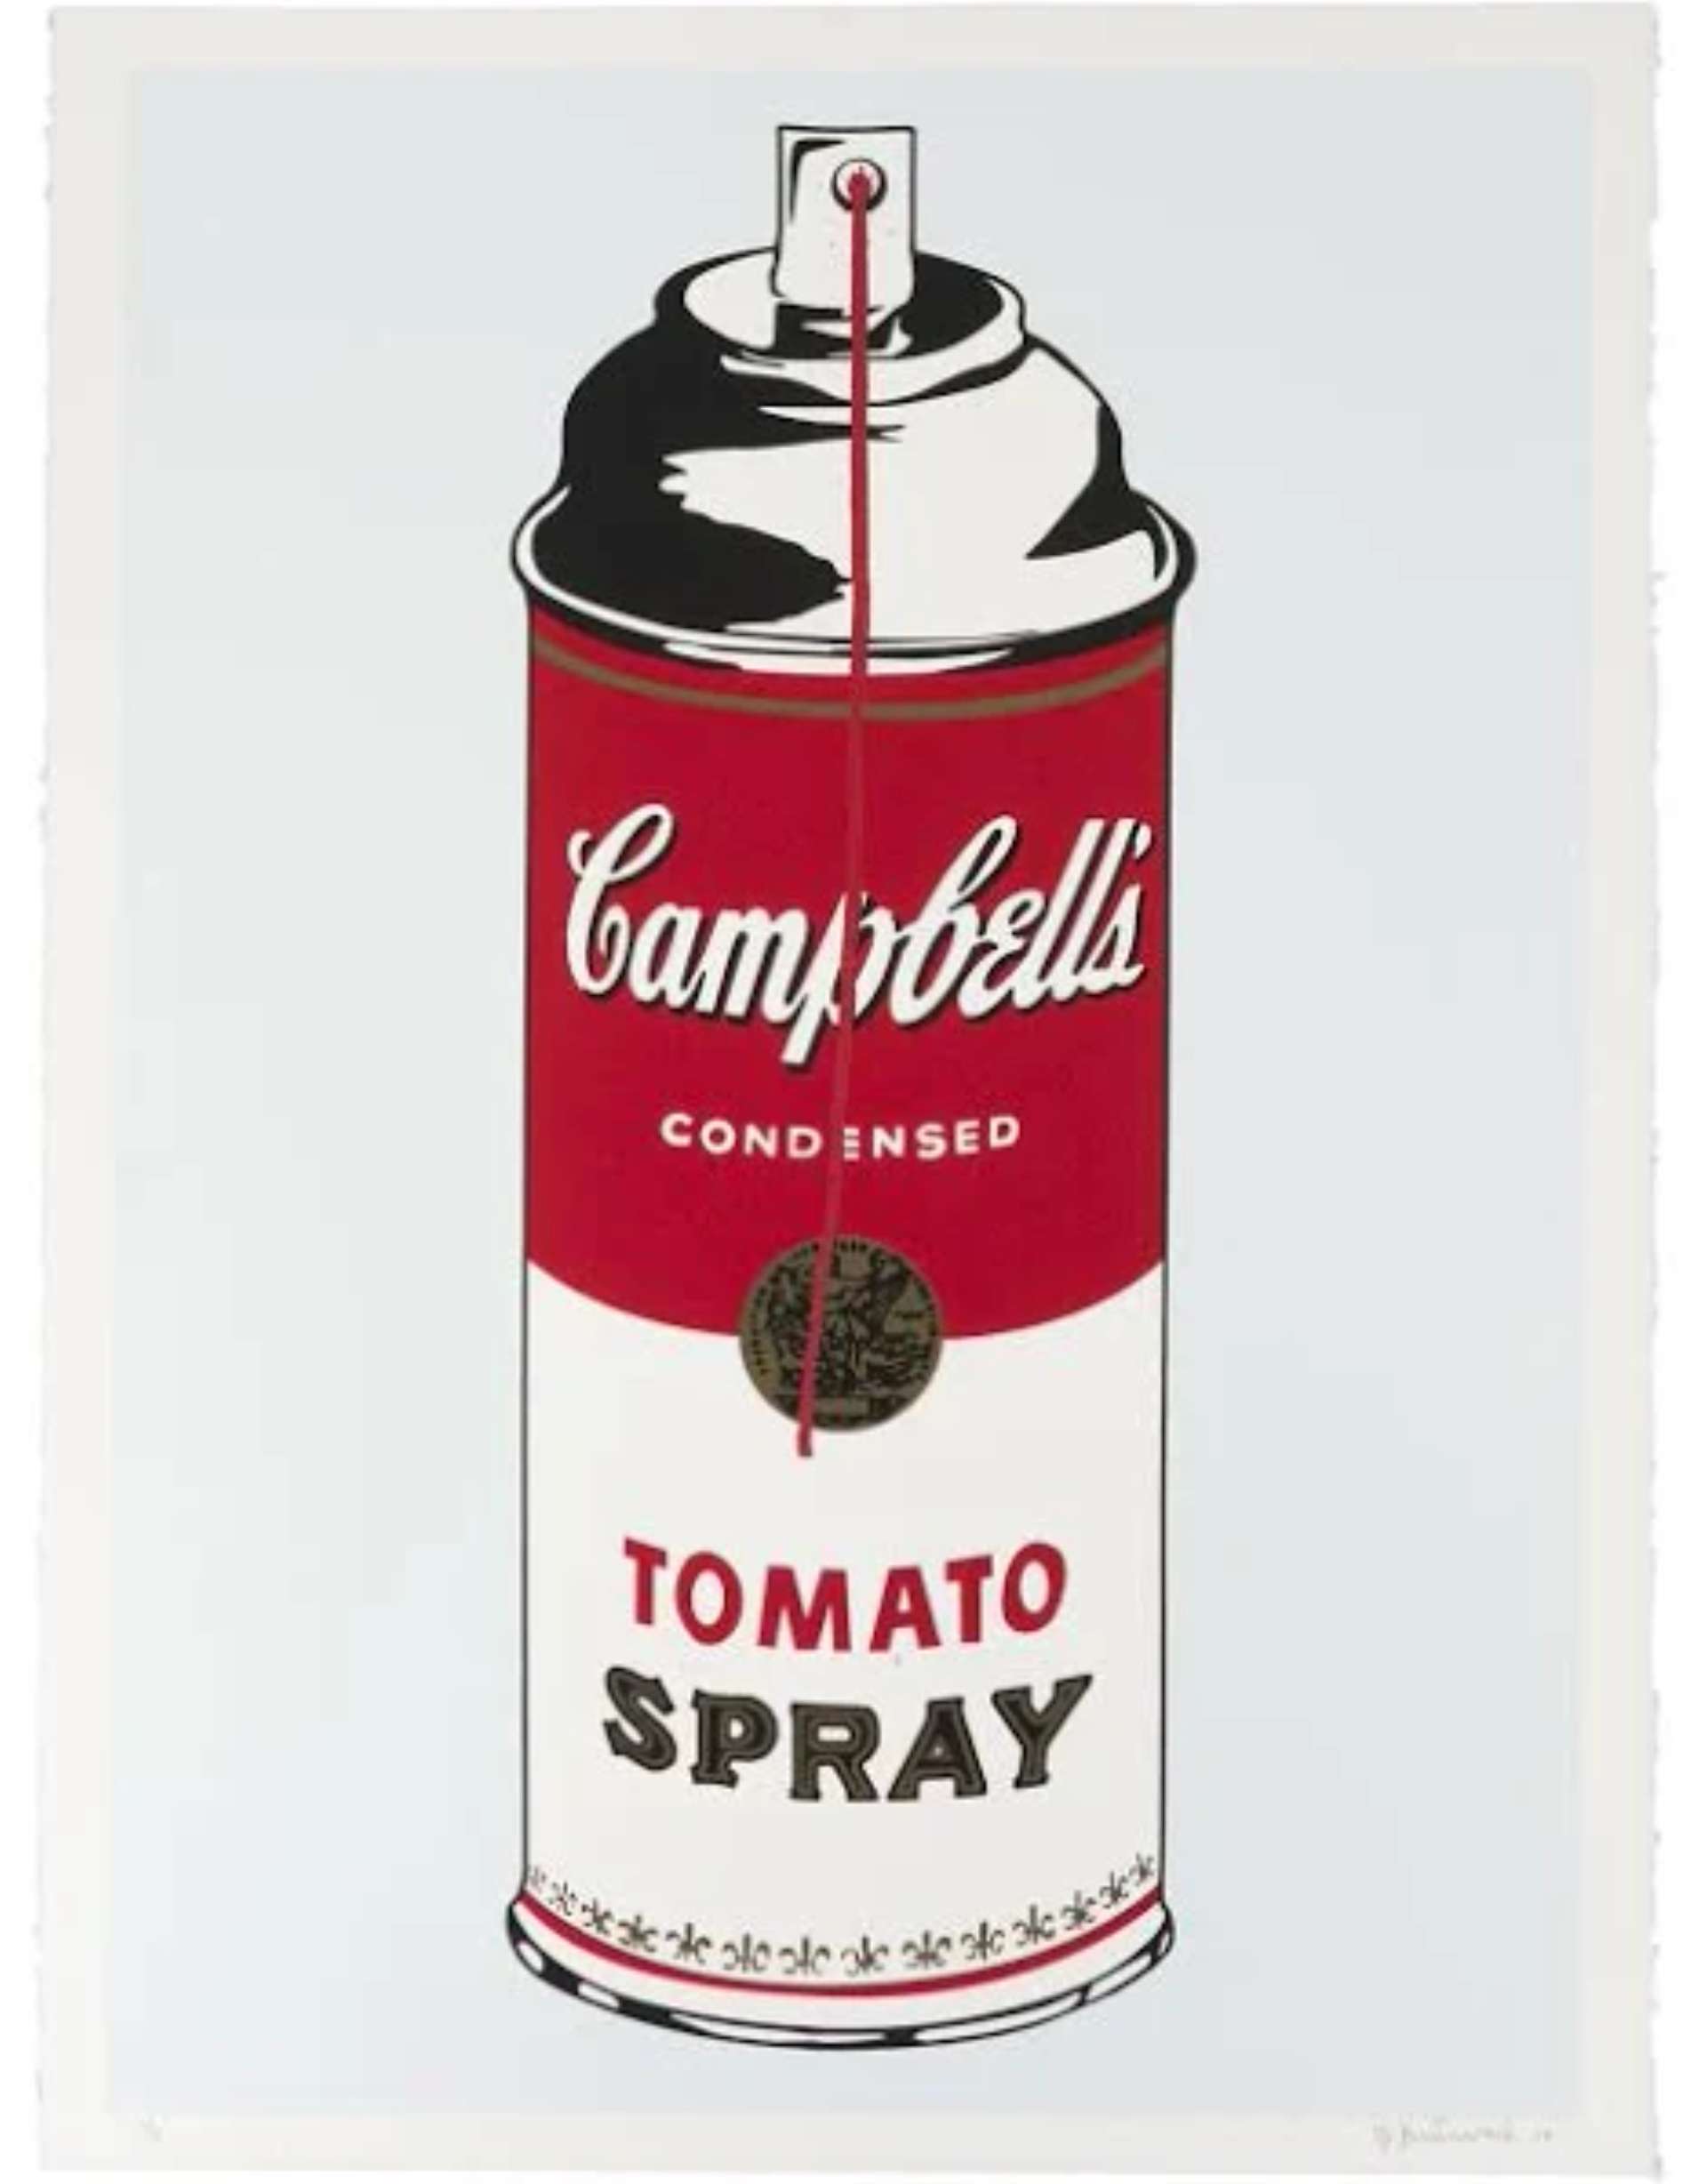 Tomato Spray by Mr. Brainwash